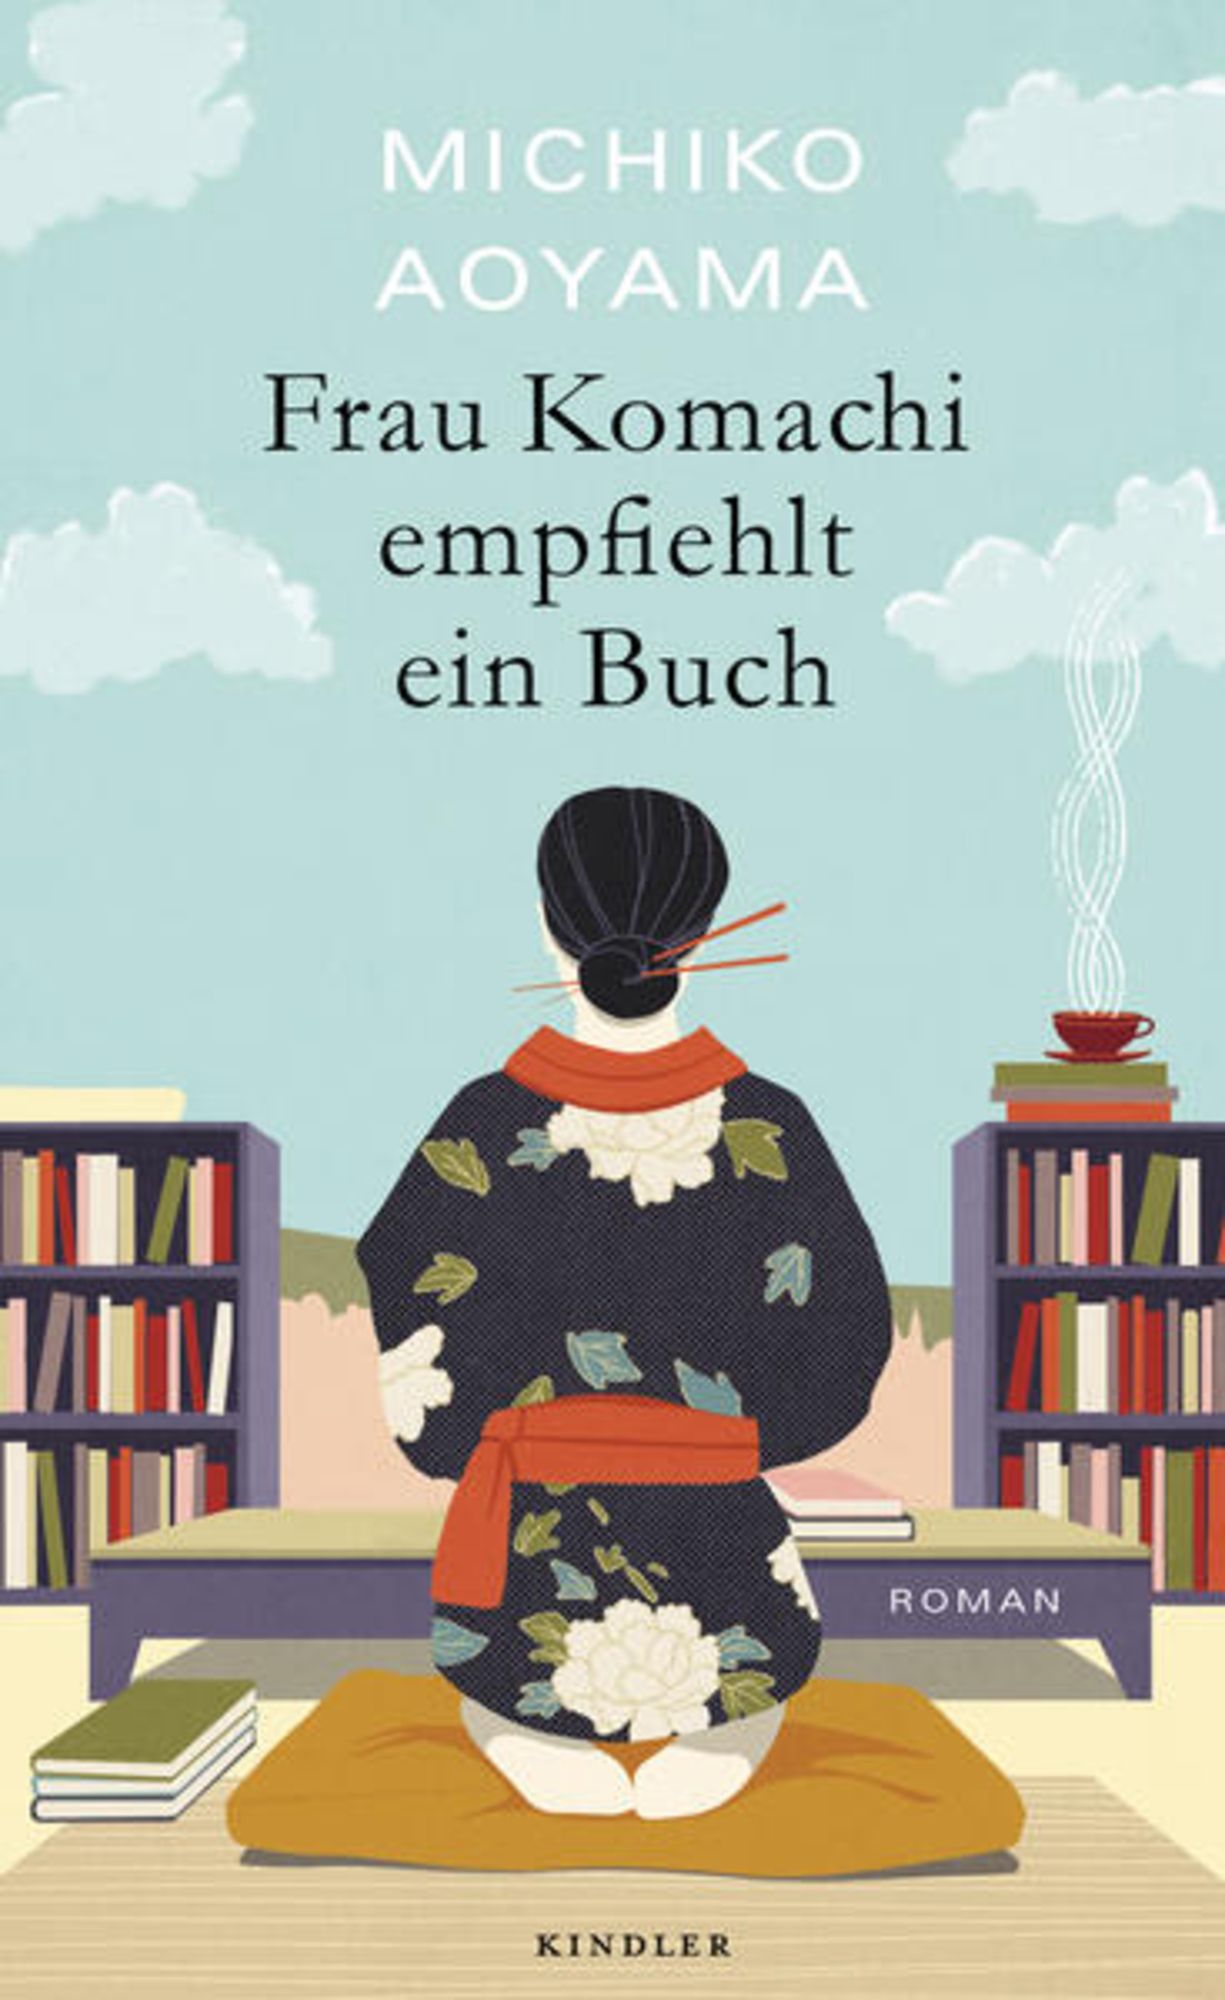 青山美智子: Frau Komachi empfiehlt ein Buch (Hardcover, German language, Kindler Verlag)